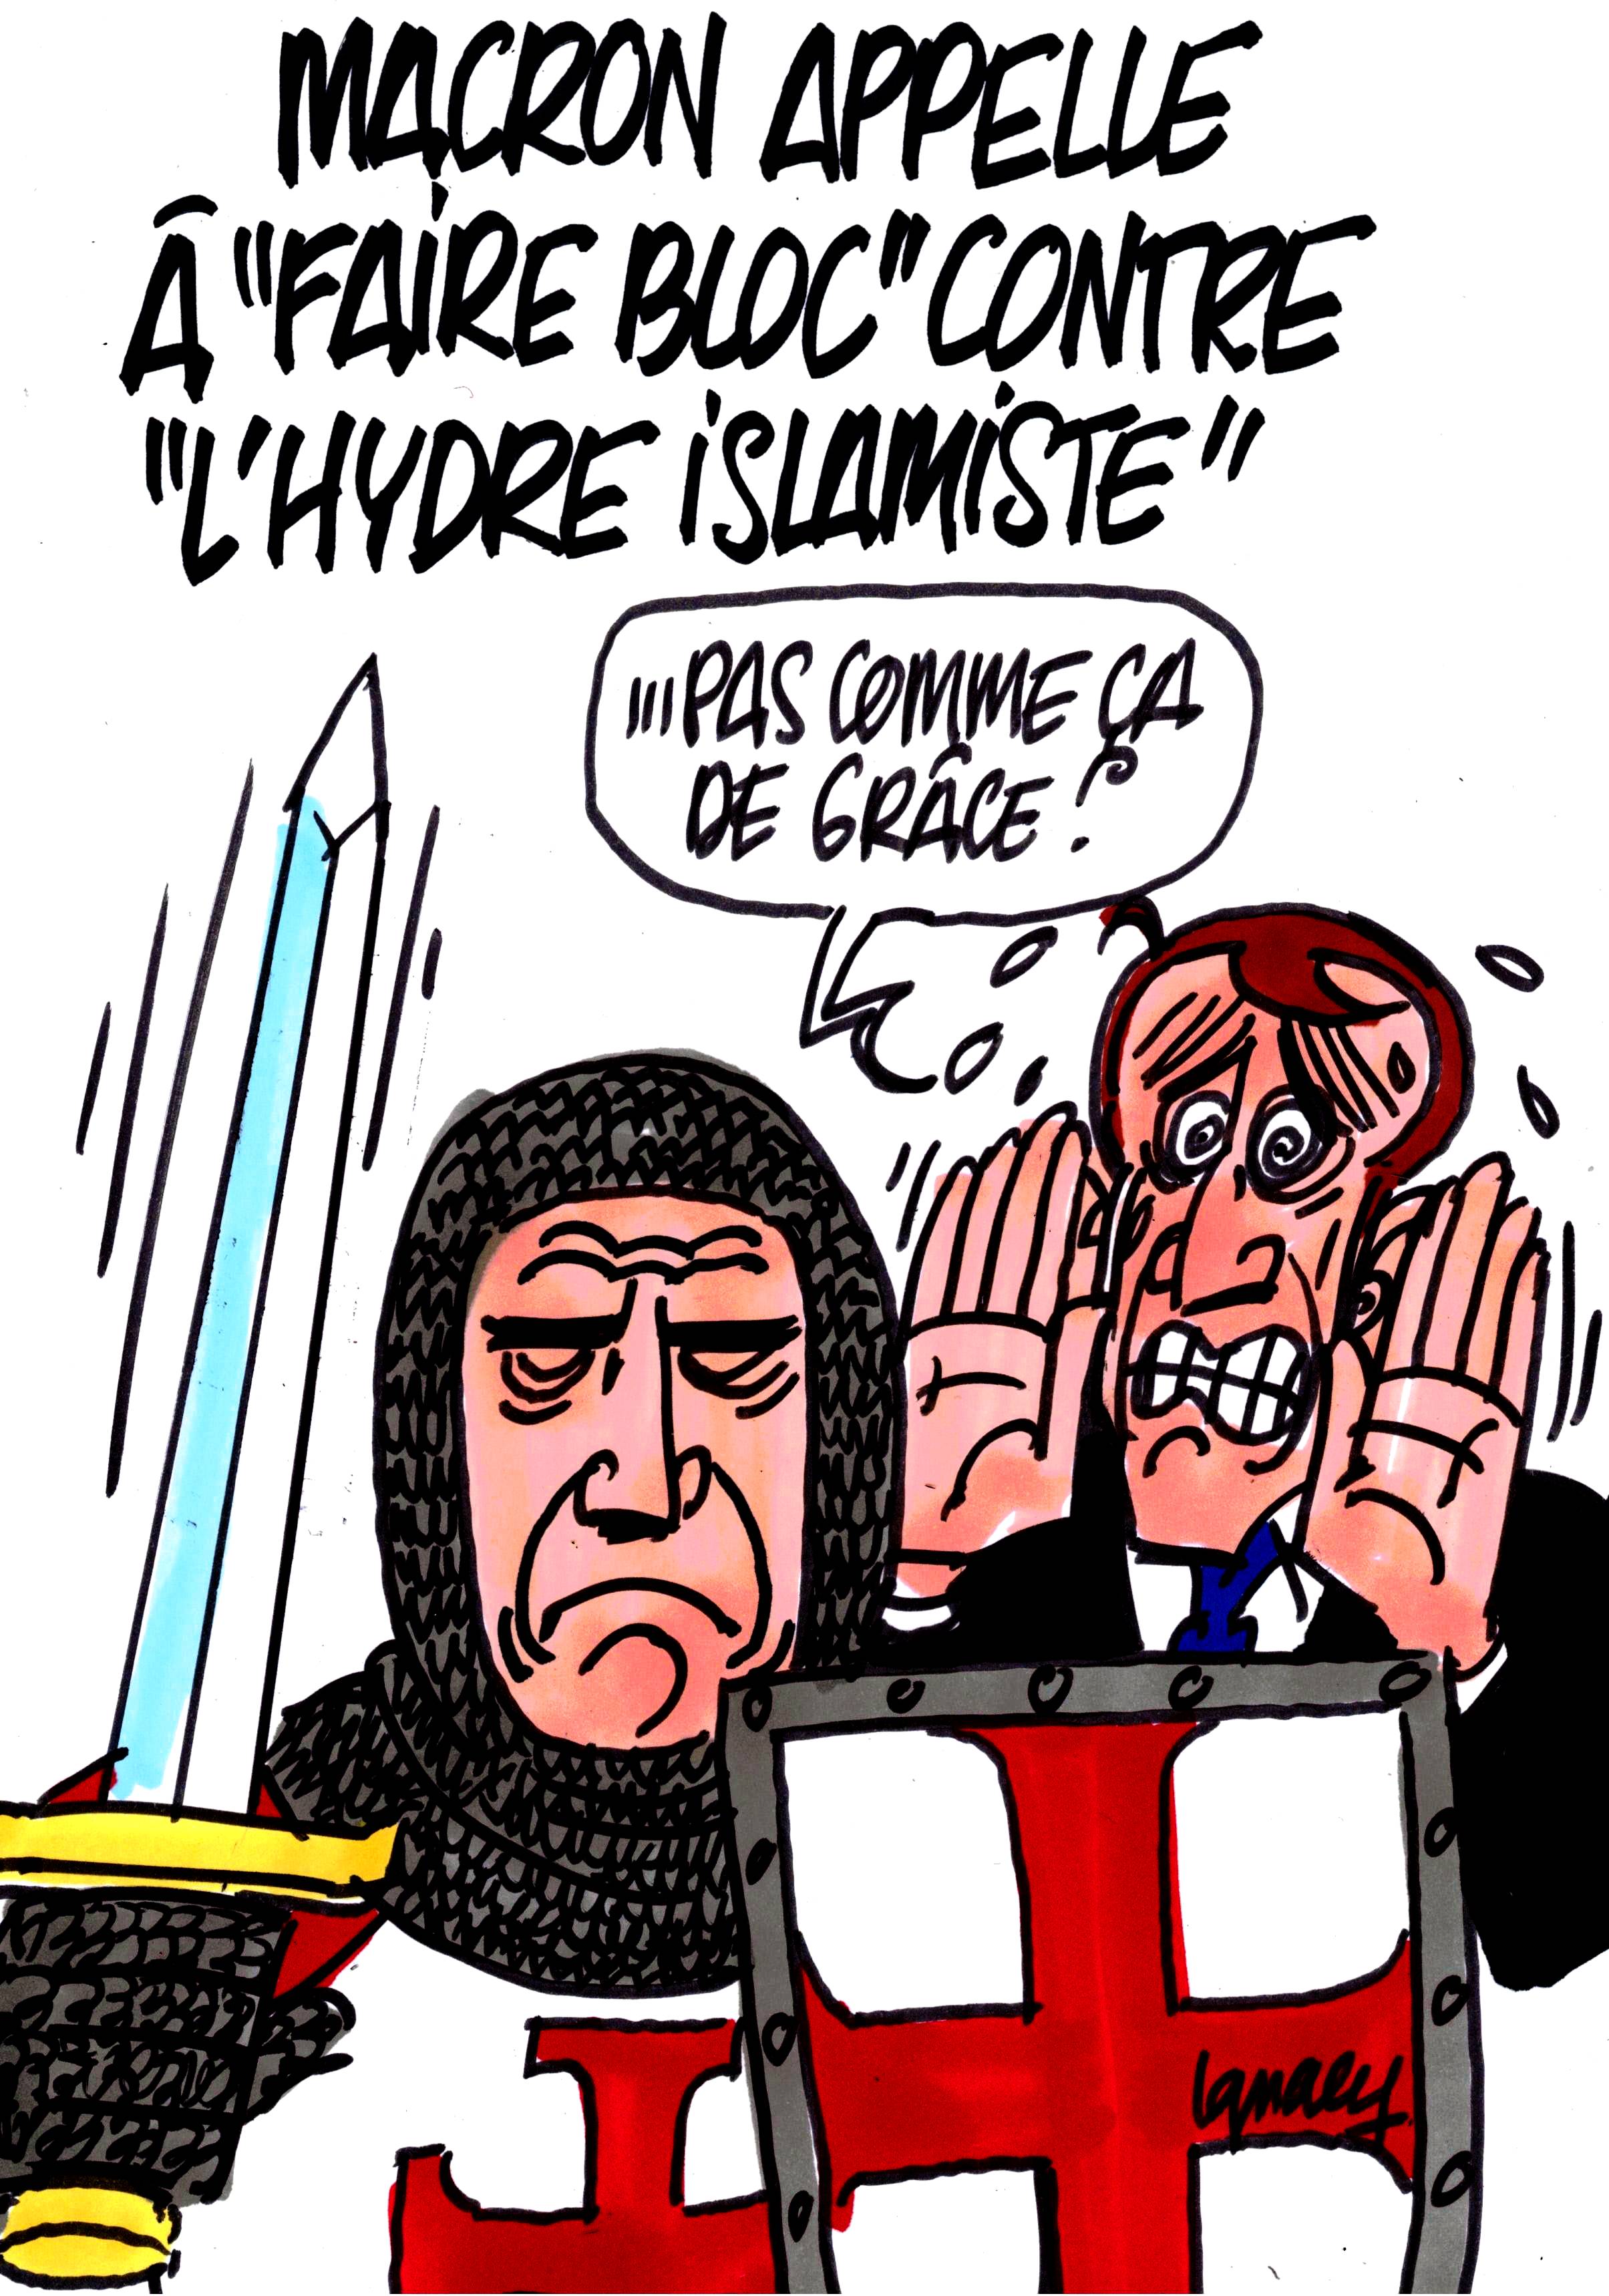 Ignace - Macron appelle à "faire bloc" contre "l'hydre islamiste"